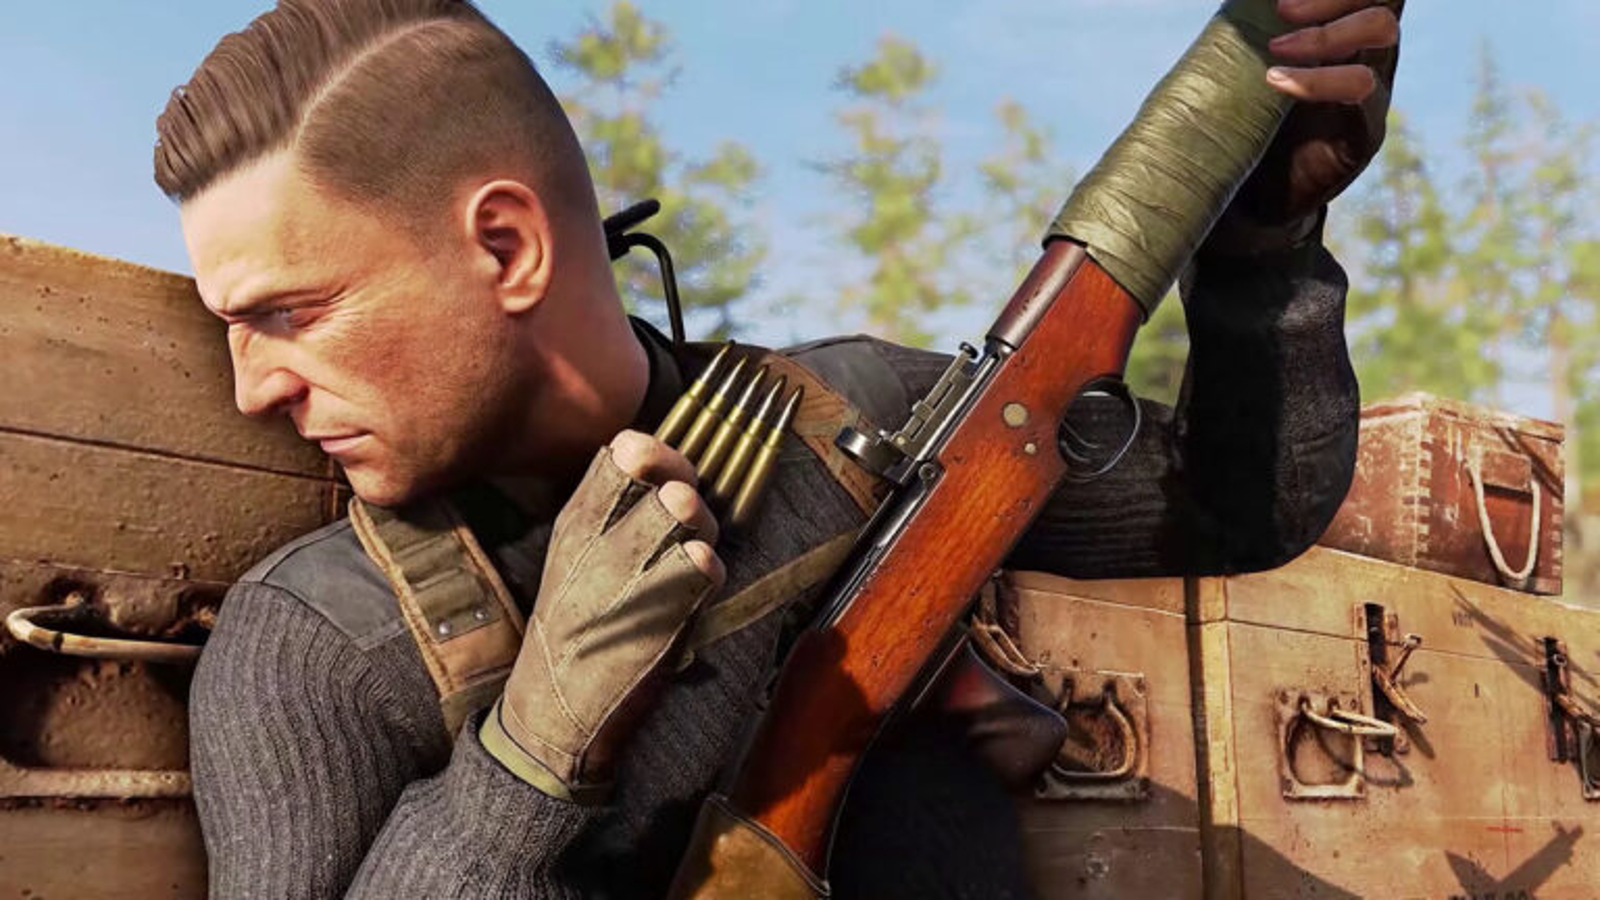 Sniper Elite 5 LOW COST | PS4 & PS5 - Jogo Digital